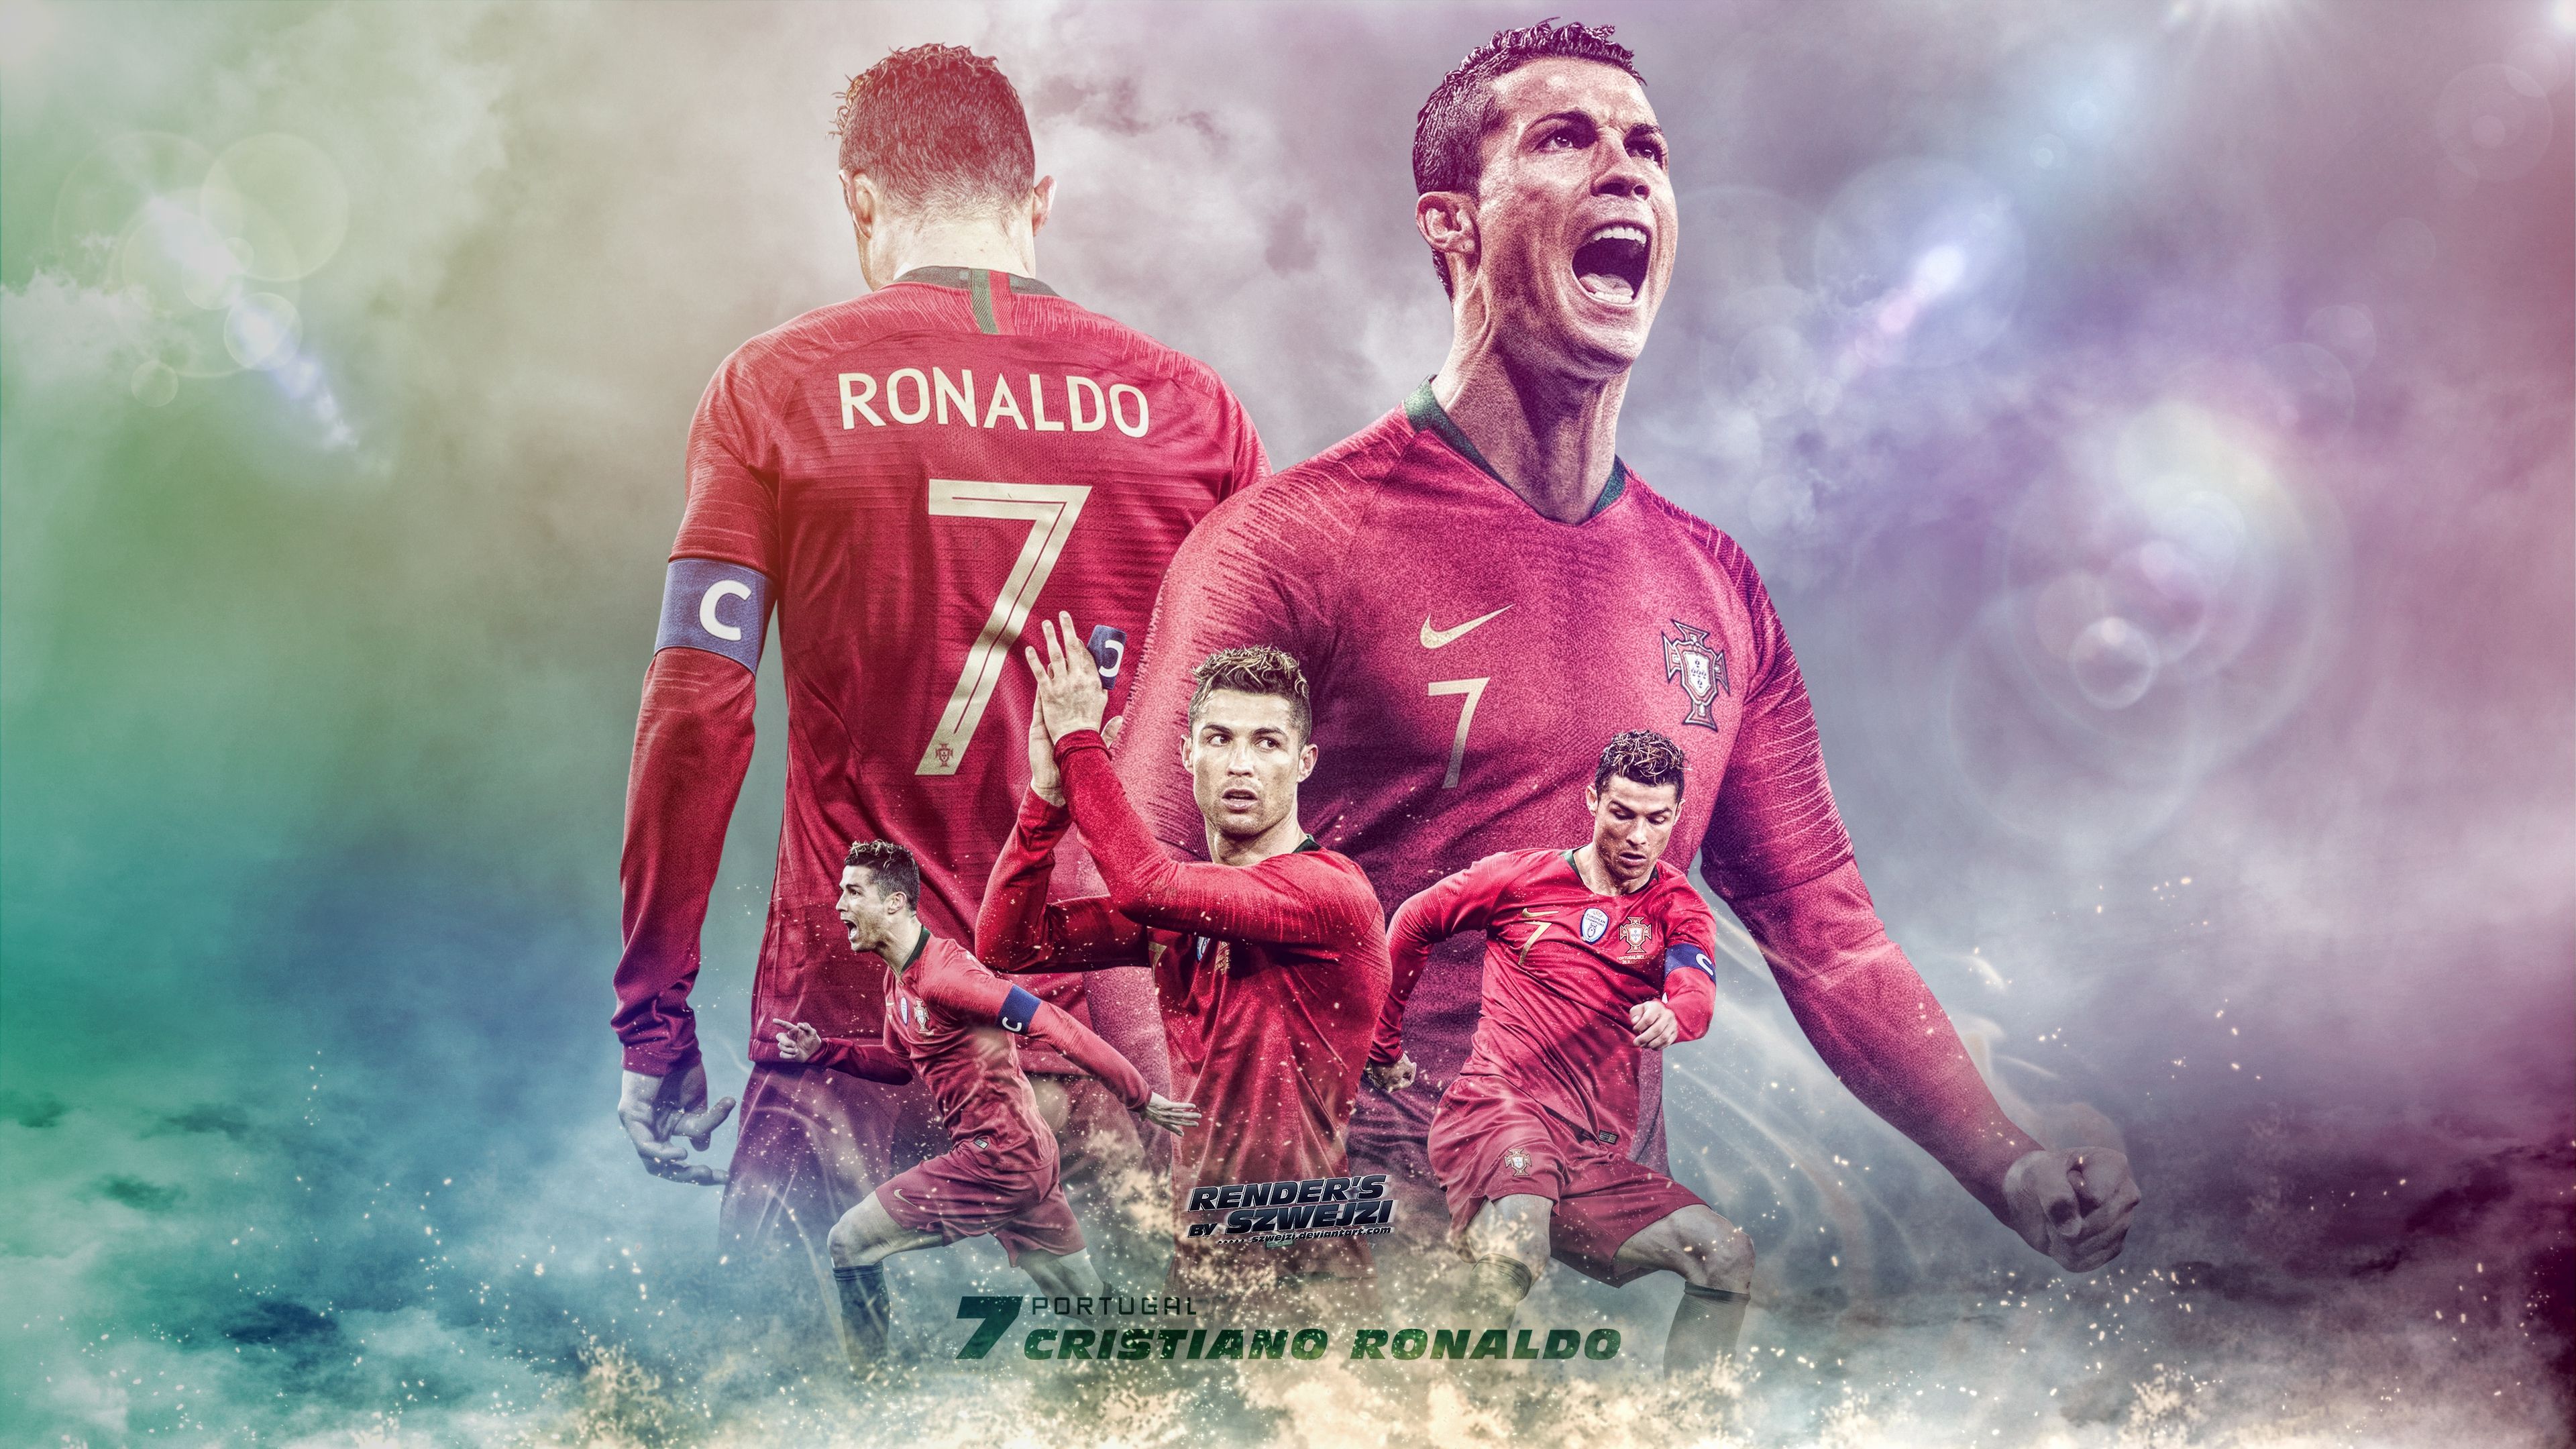 Ronaldo wallpaper  Futebol fotos Fotografia de futebol Fotos do neymar